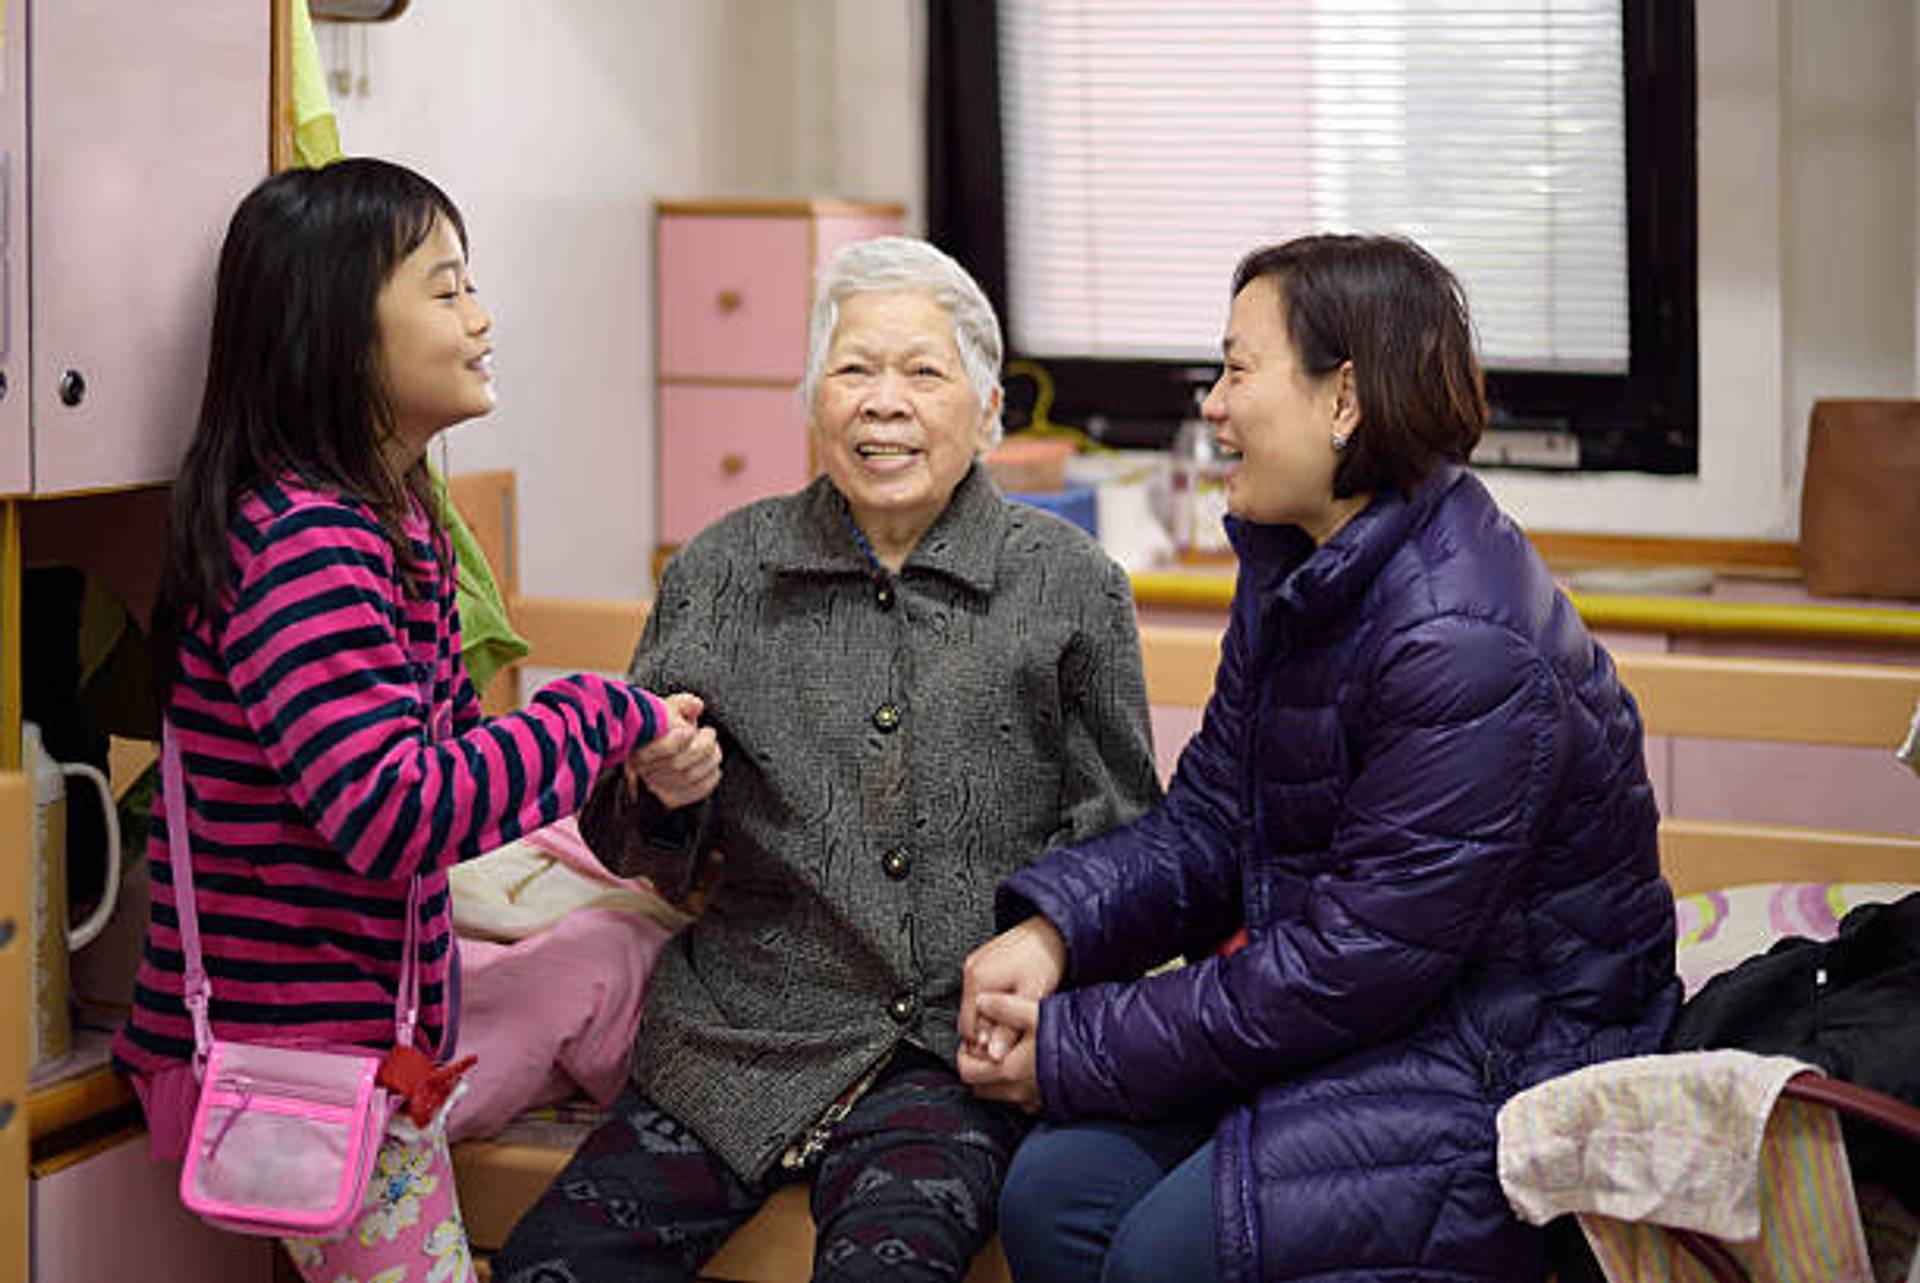 Muji helps seniors combat loneliness in Japan